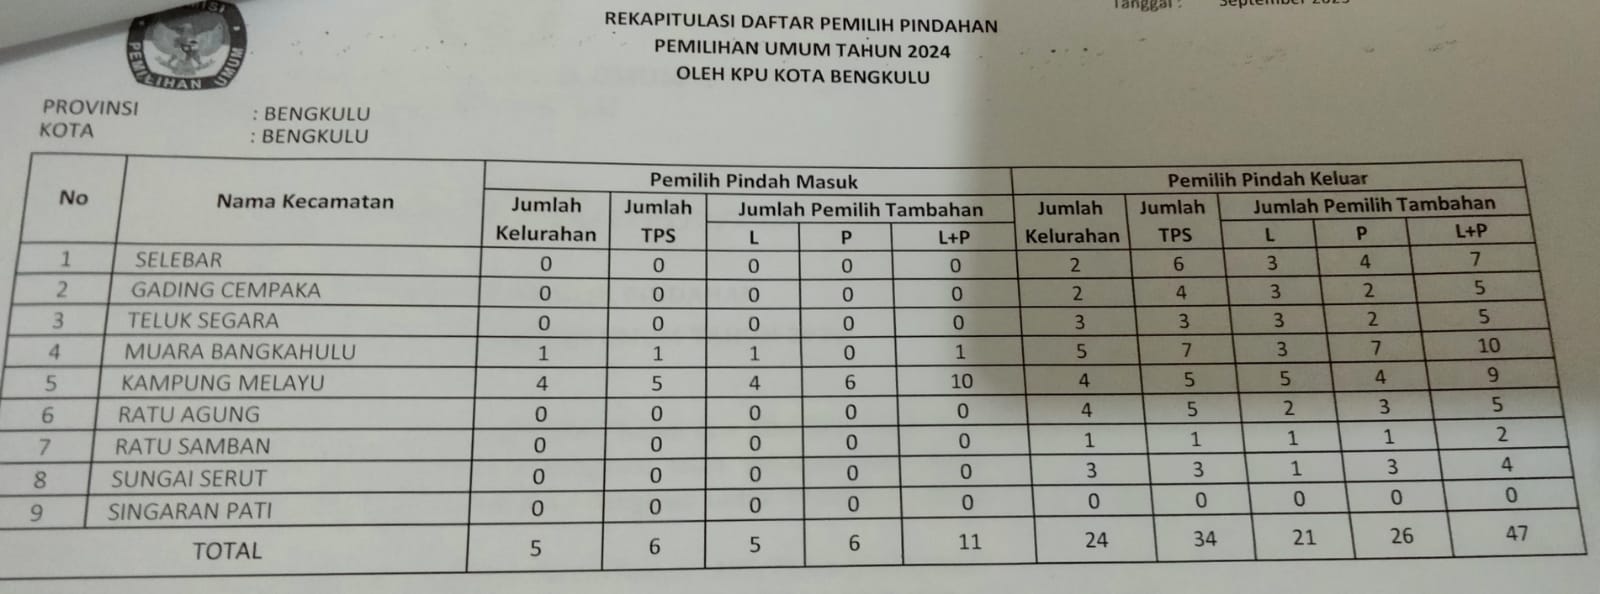 KPU Kota Terima DPTB, 47 Pemilih Pindah Keluar dan 11 Pemilih Pindah Masuk